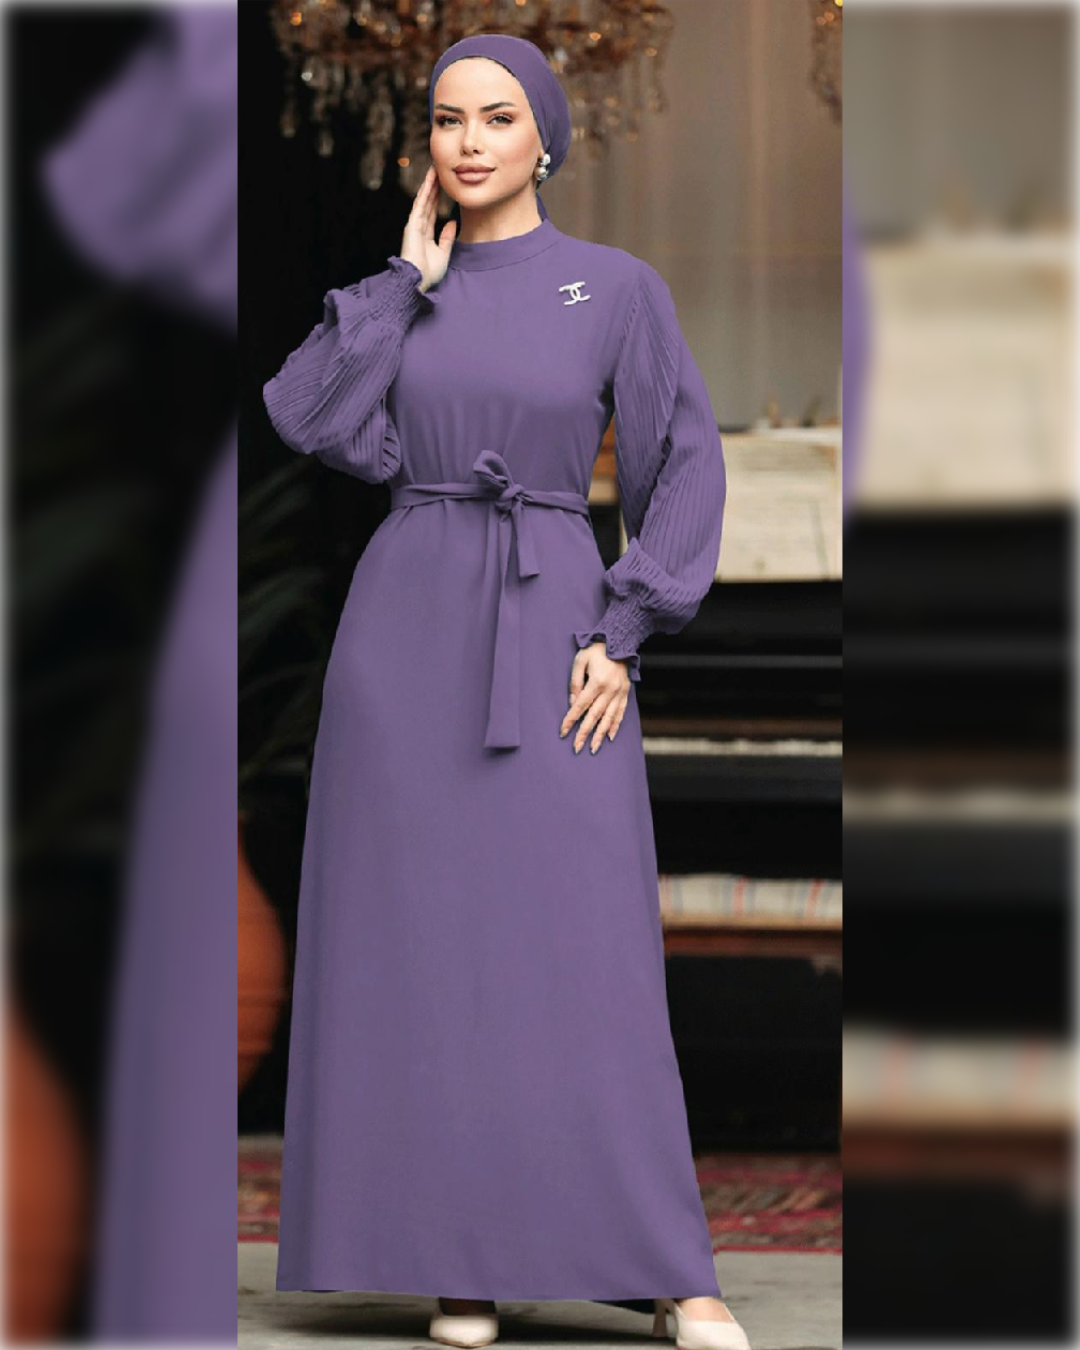 Fatimah Chic - Chiffon Dress in Light Purple Shade   فستان فاطمة الكلاسيكي الأنيق من الشيفون المبطن باللون البنفسجي الفاتح الجميل